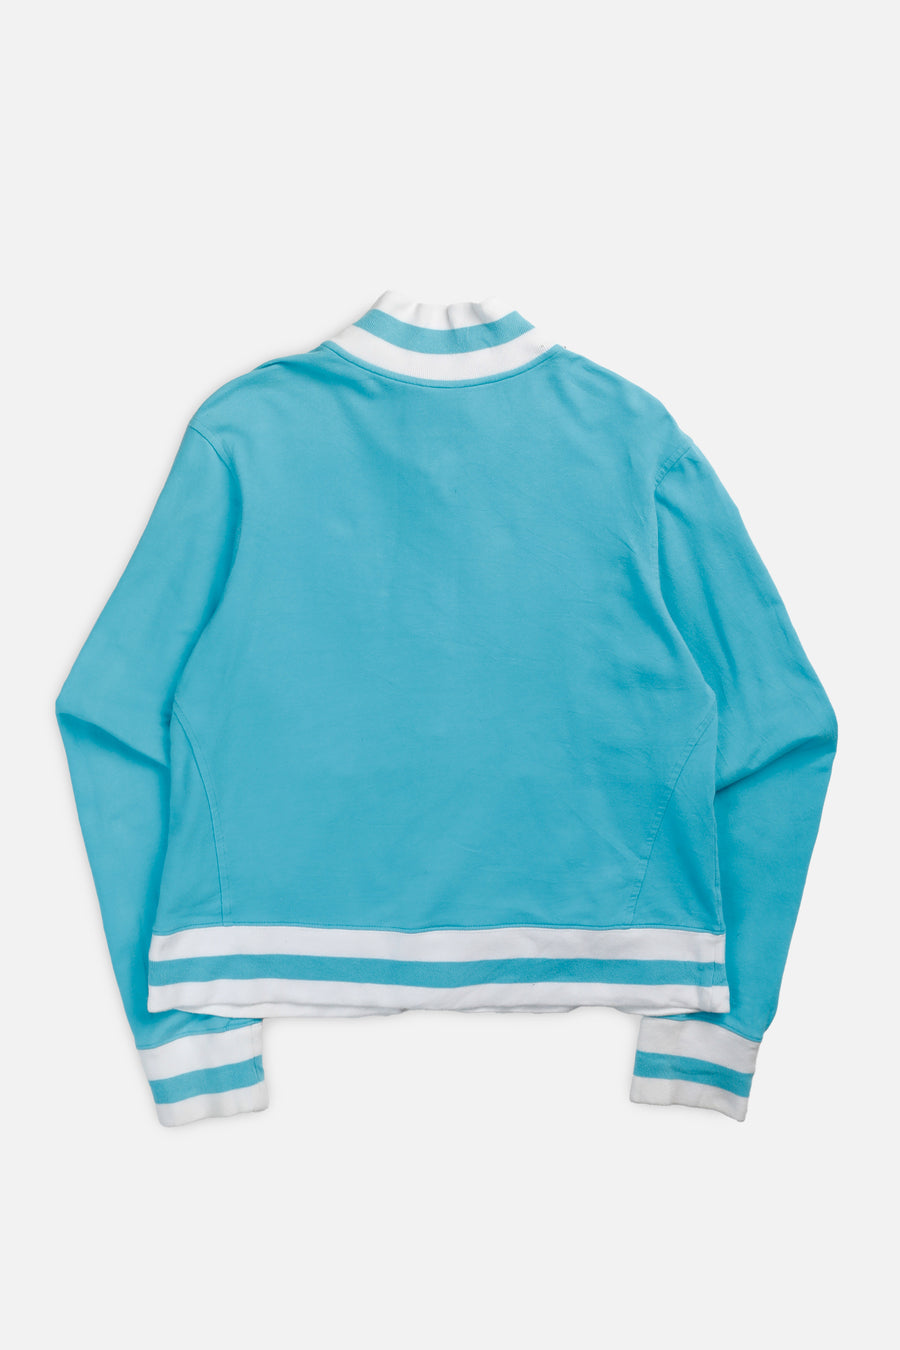 Vintage Nike Sweatshirt - Women's L